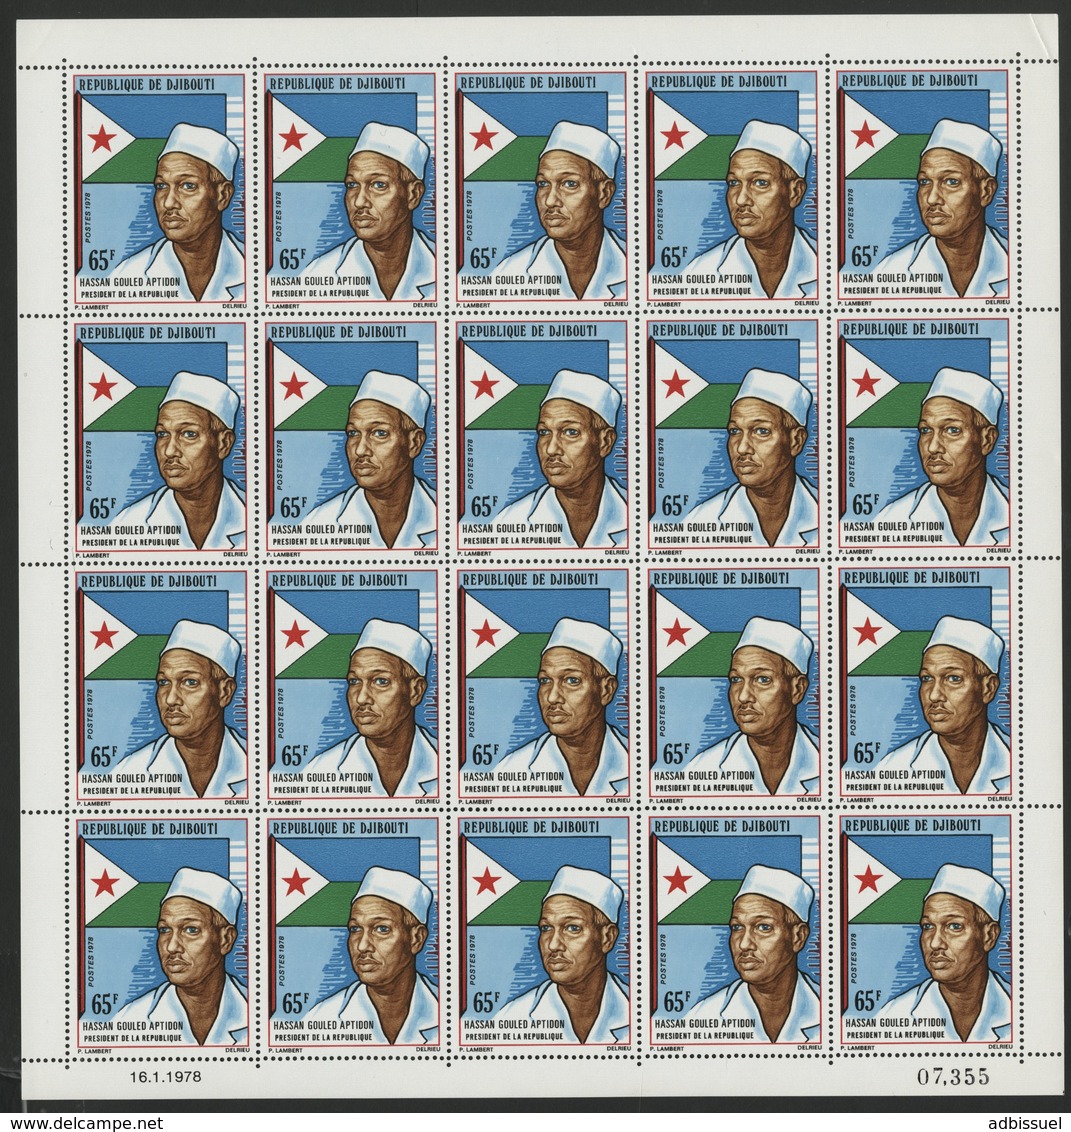 DJIBOUTI N° 476 COTE 40 € FEUILLE De 20 EX. MNH ** PRESIDENT HASSAN GOULED APTIDON. TB/VG - Djibouti (1977-...)